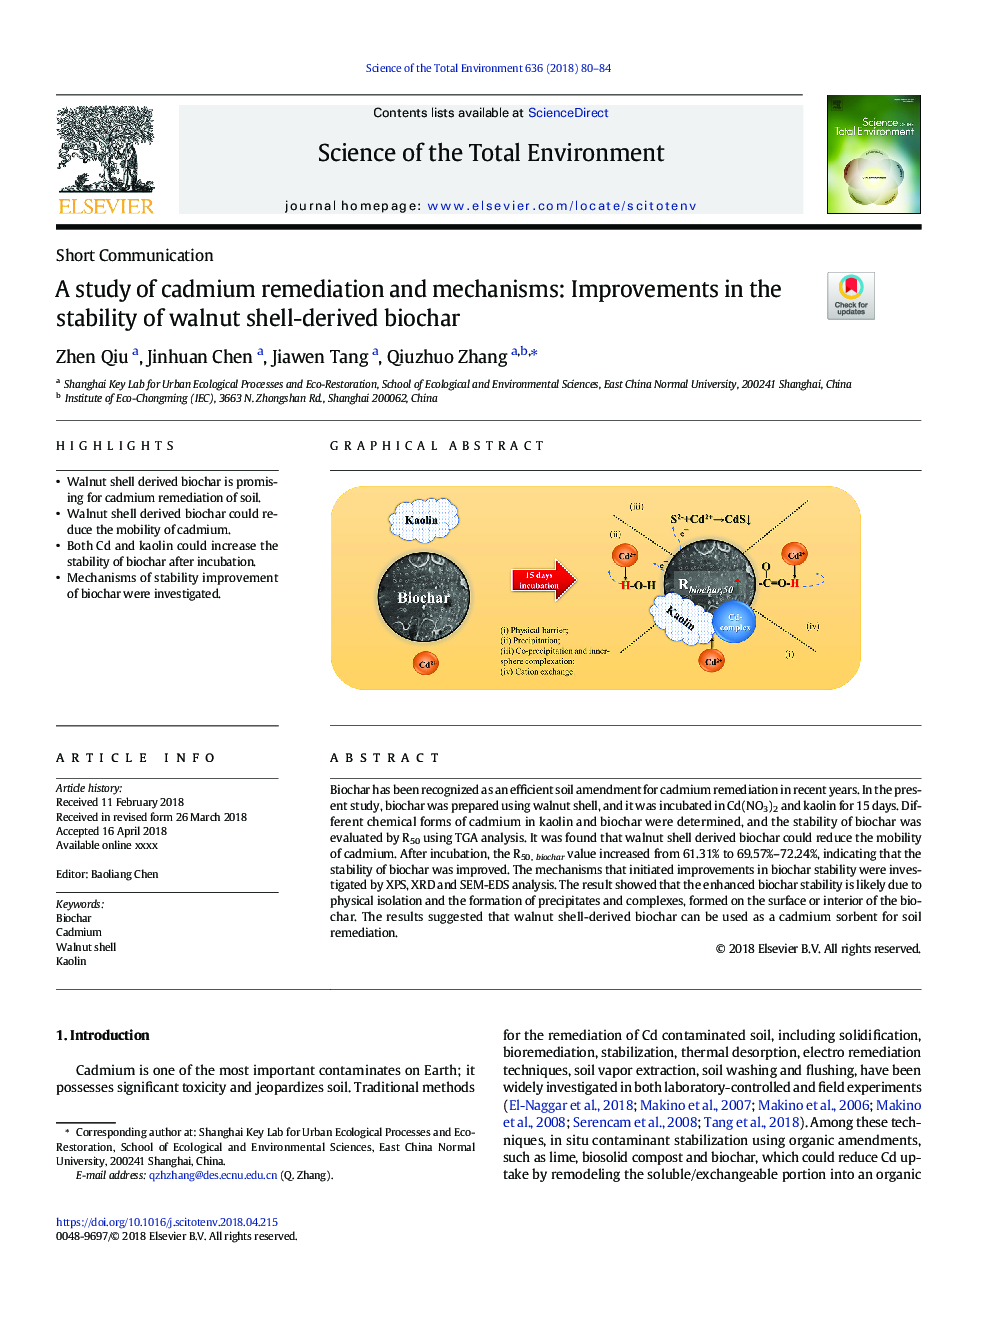 مطالعه ای در مورد احیاء کادمیم و مکانیسم ها: بهبود در ثبات زیست گه های حاصل از پوسته گردو 